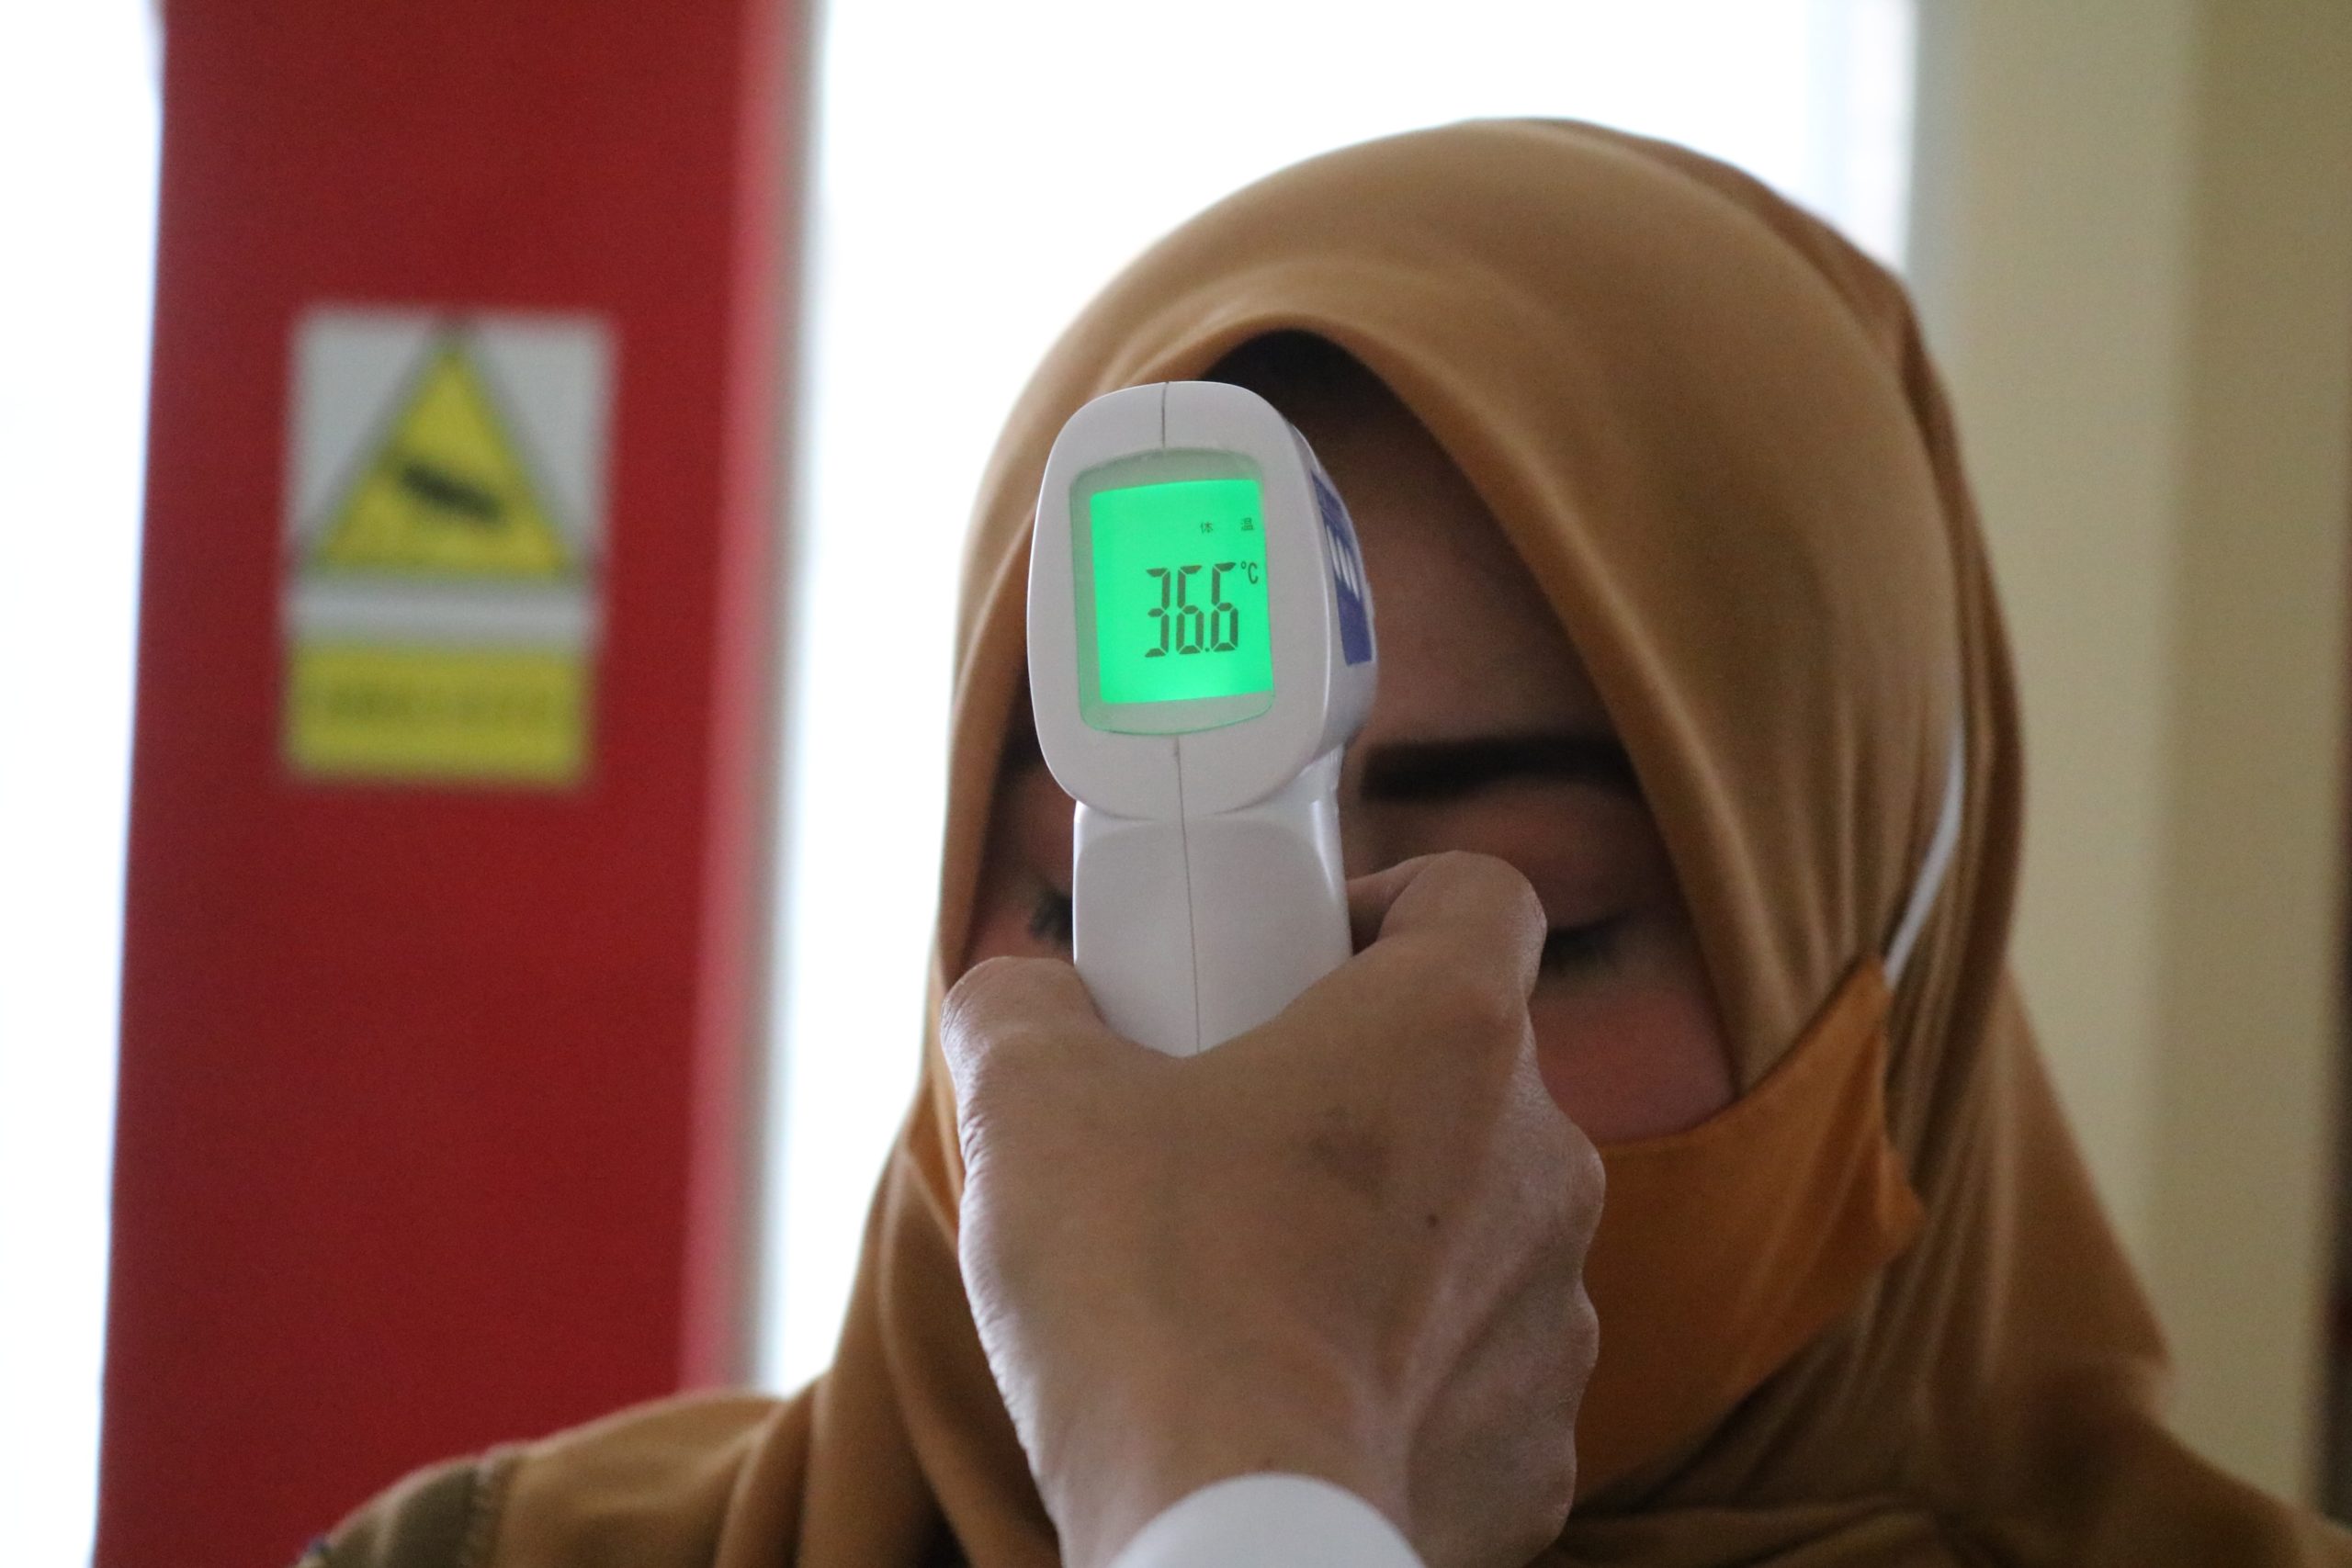 thermo gun to check body temperature as a covid-19 screening